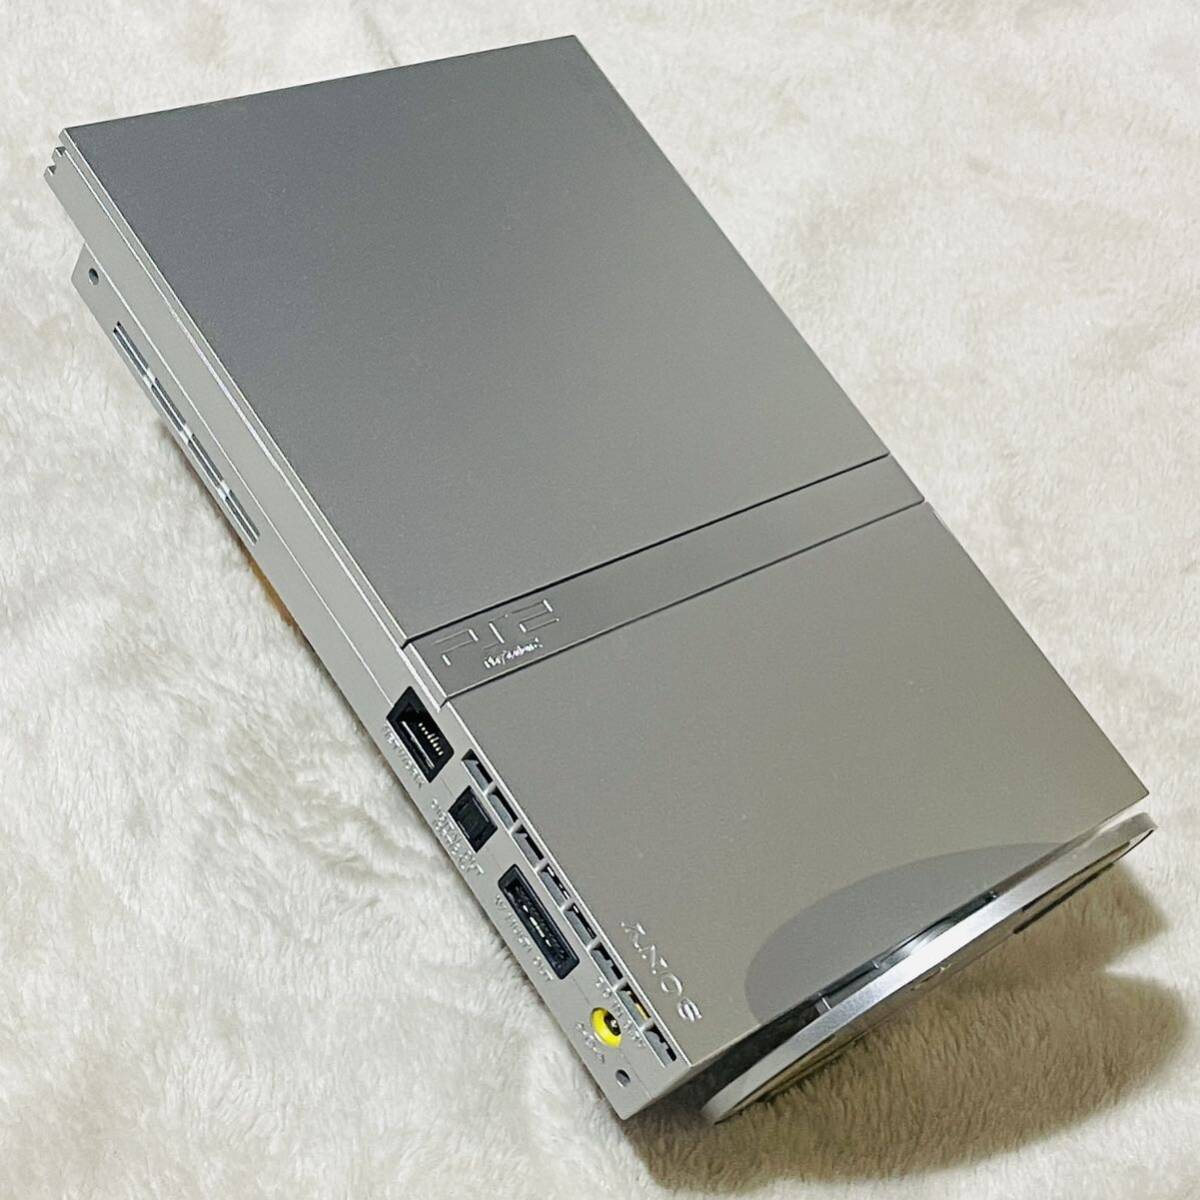  【動作確認済】美品 SONY PlayStation2 薄型SCPH-75000 サテンシルバー プレステ2コントローラー ケーブルセット 非売品ソフト2本 まとめの画像4